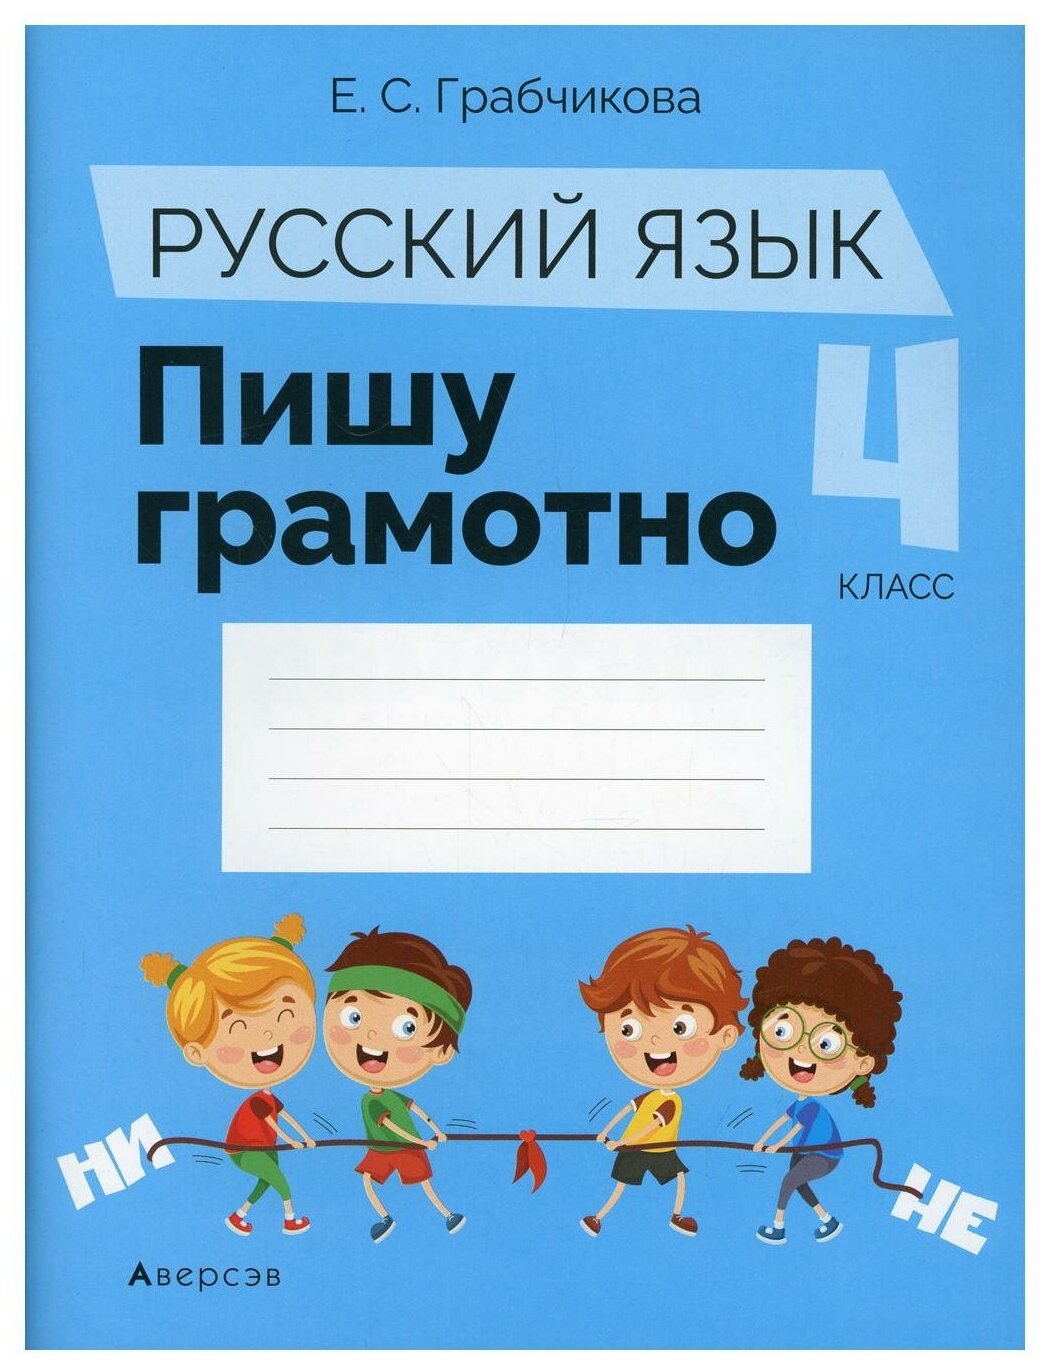 Русский язык. 4 класс. Пишу грамотно - фото №1